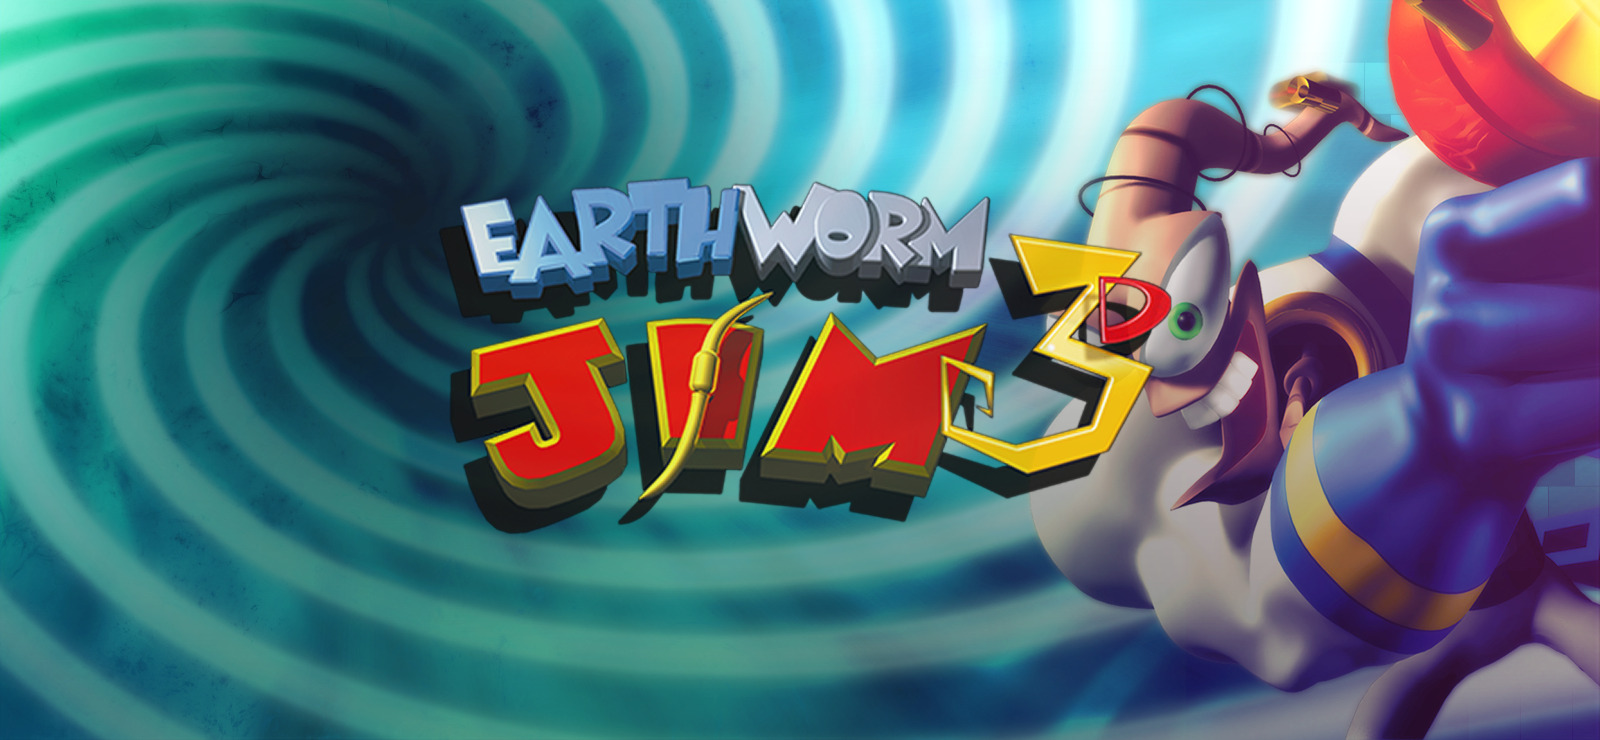 download sega game earthworm jim